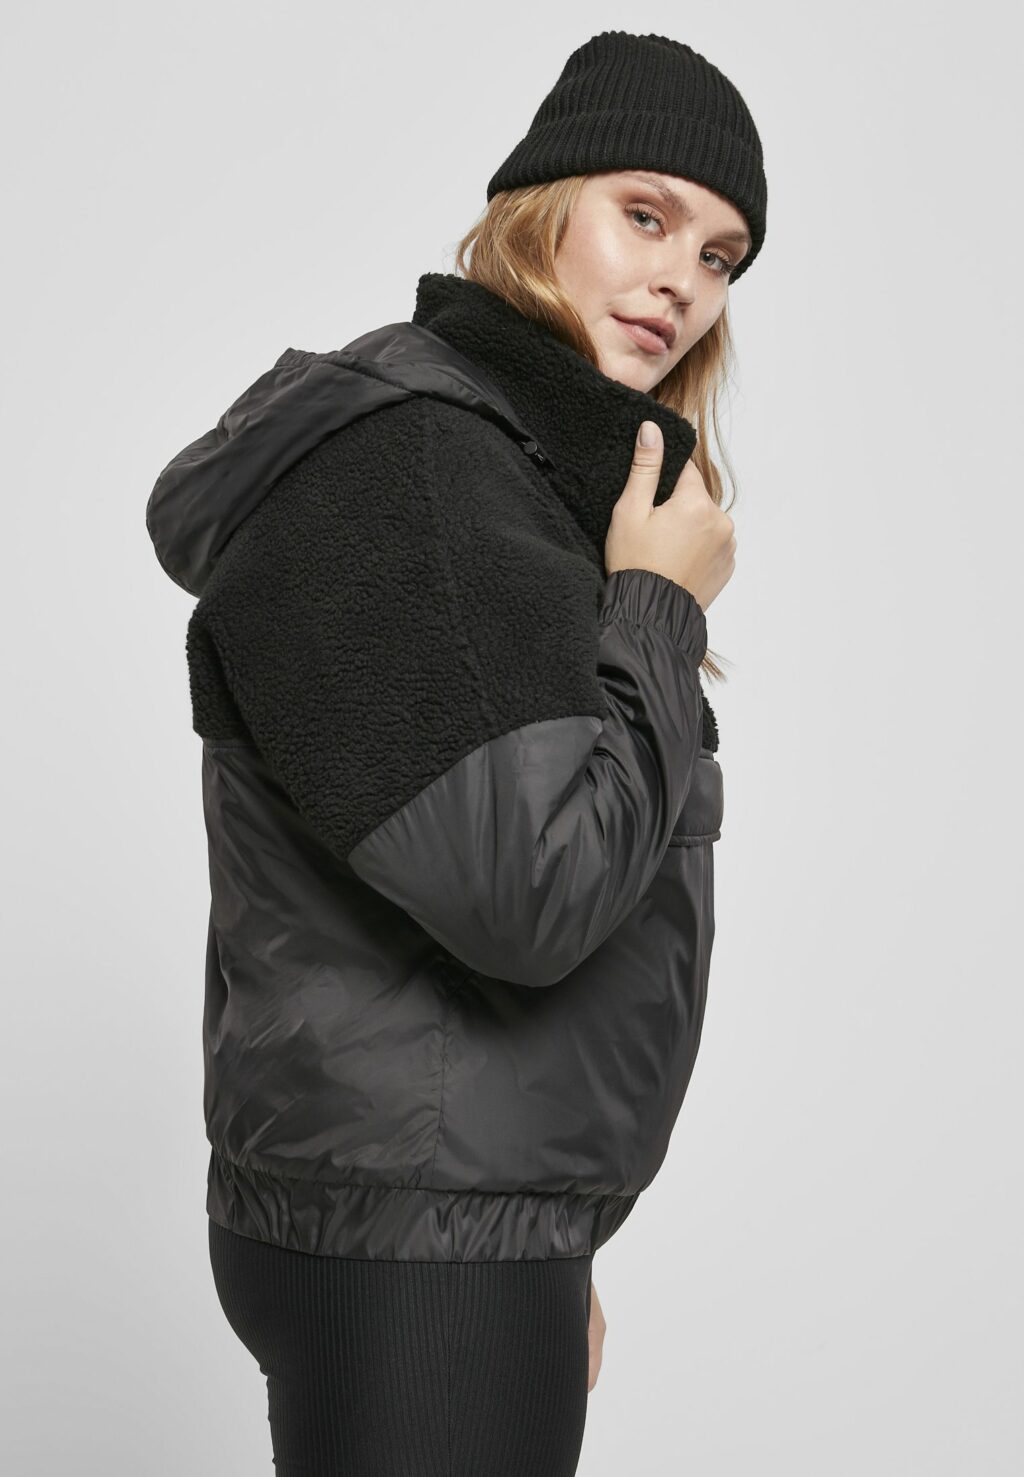 Urban Classics Ladies Sherpa Mix Pull Over Jacket black/black TB3990